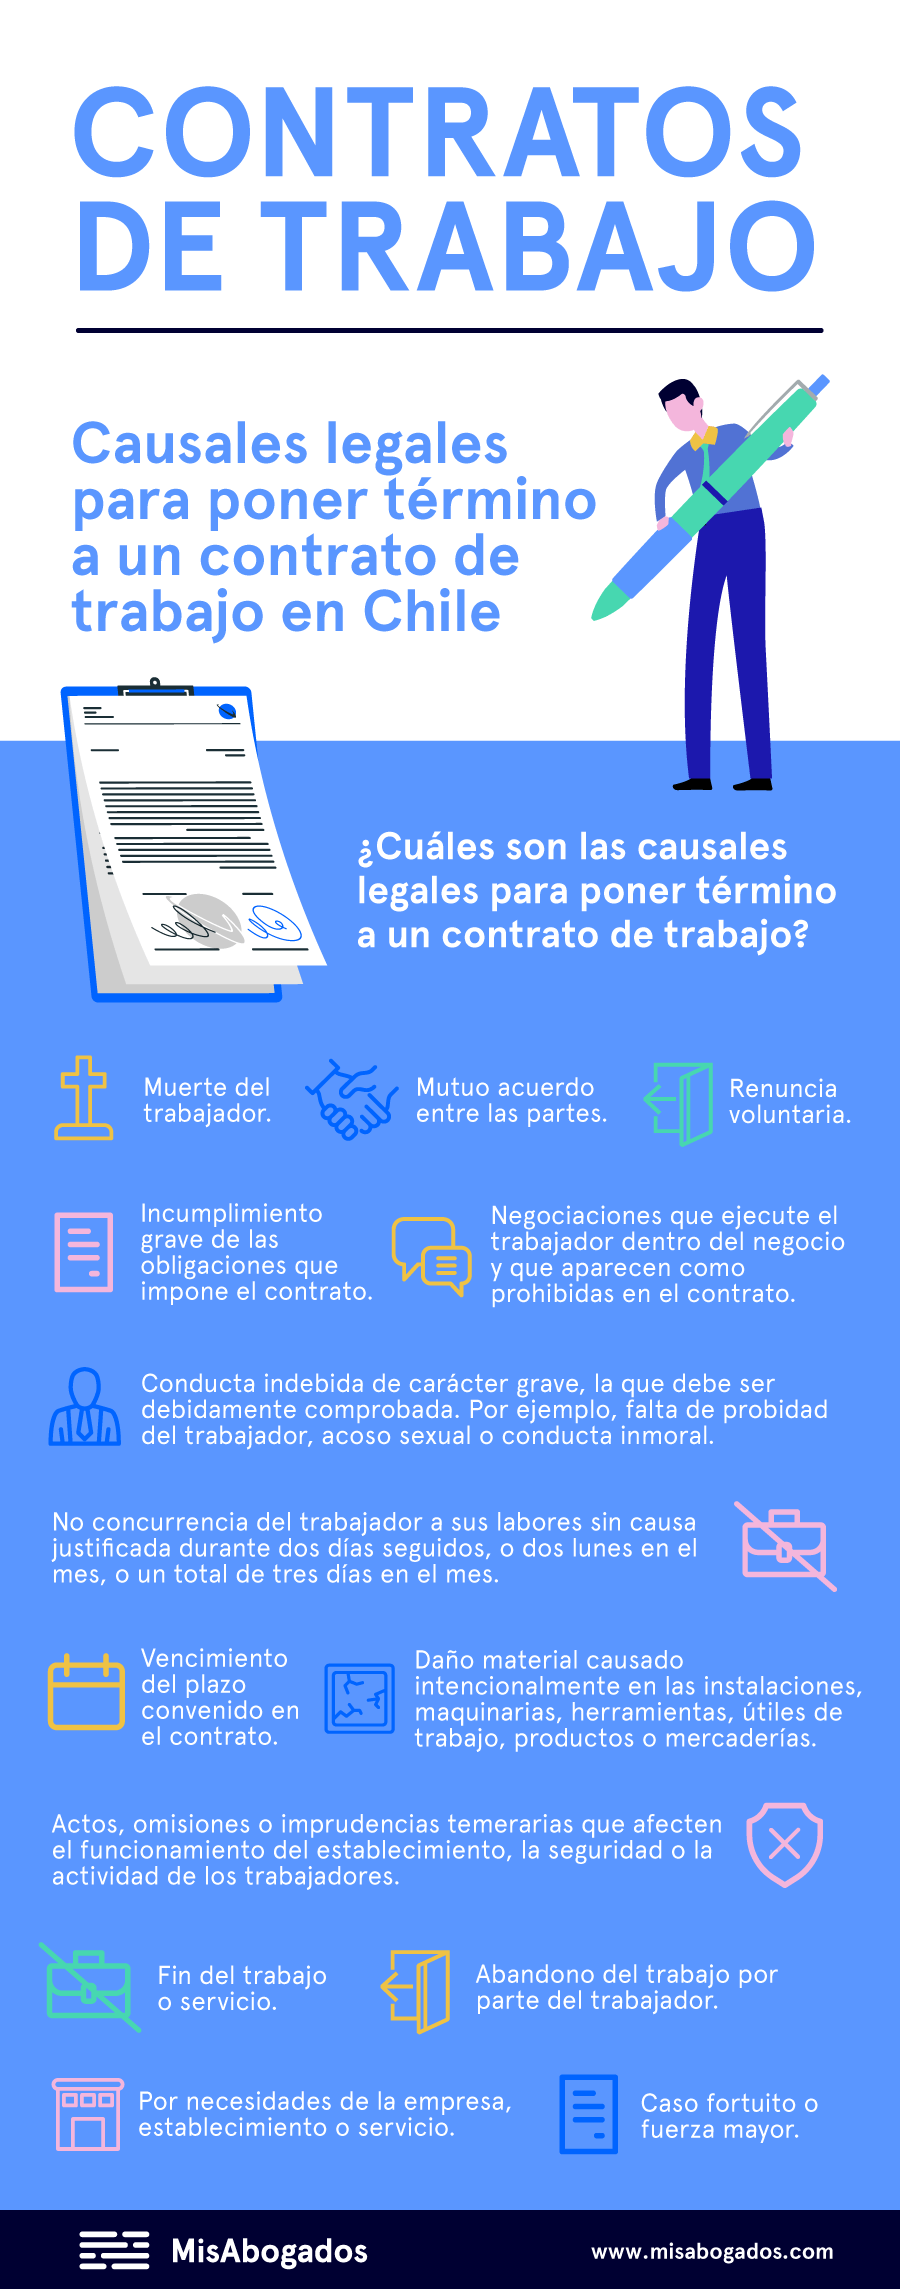 Todo lo que debes saber sobre contratos de trabajo en la ley chilena